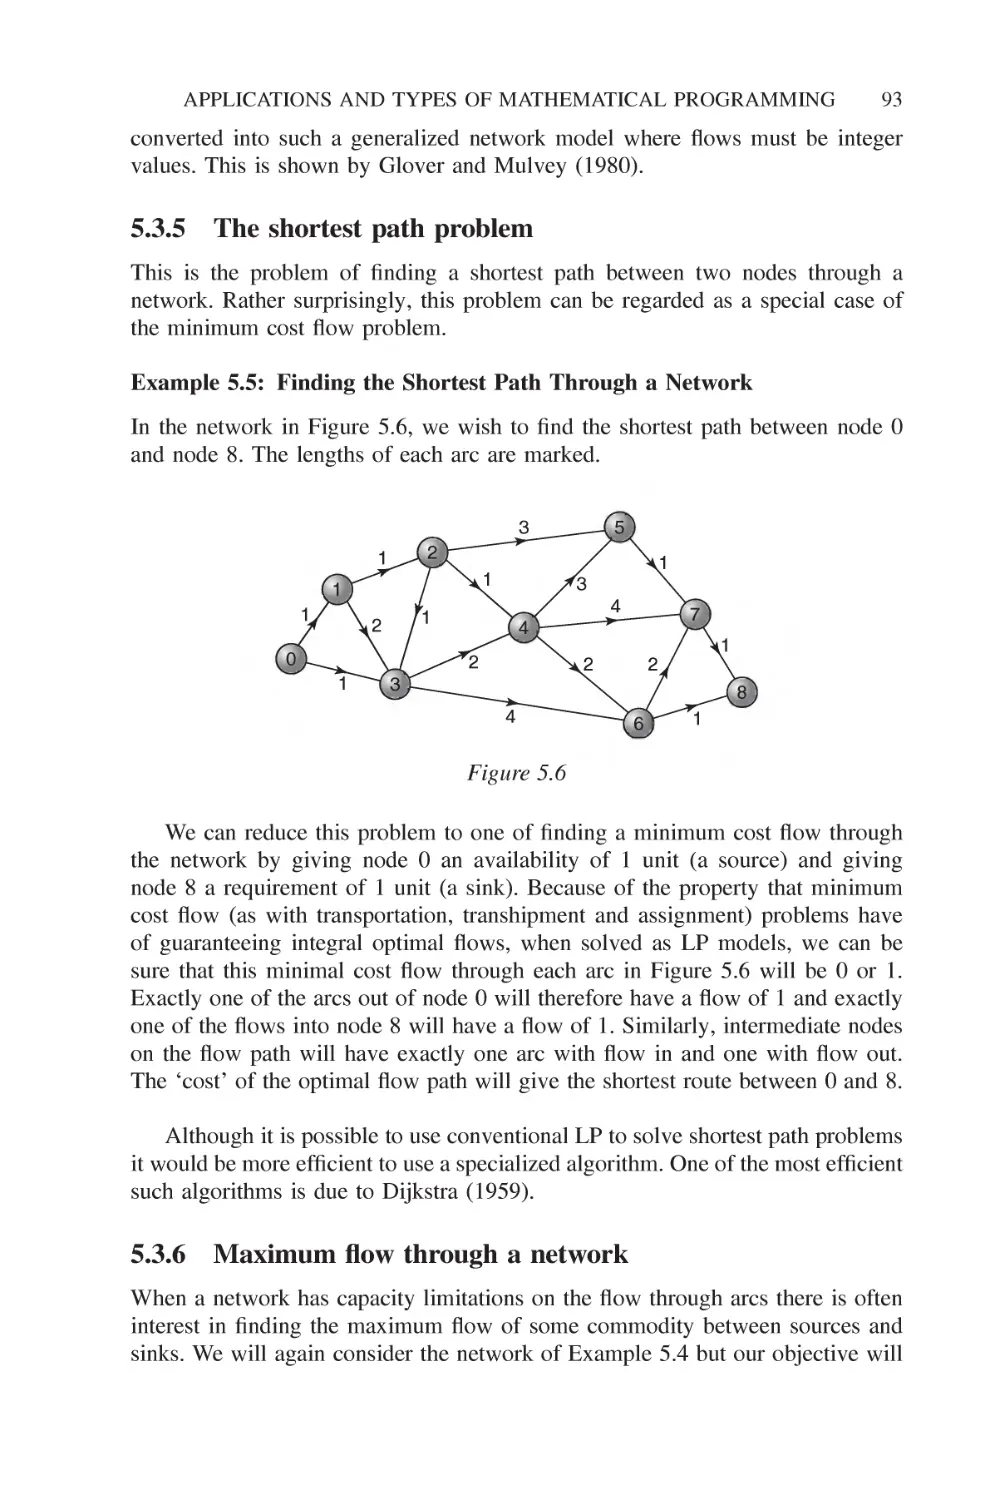 5.3.5 The shortest path problem
5.3.6 Maximum flow through a network